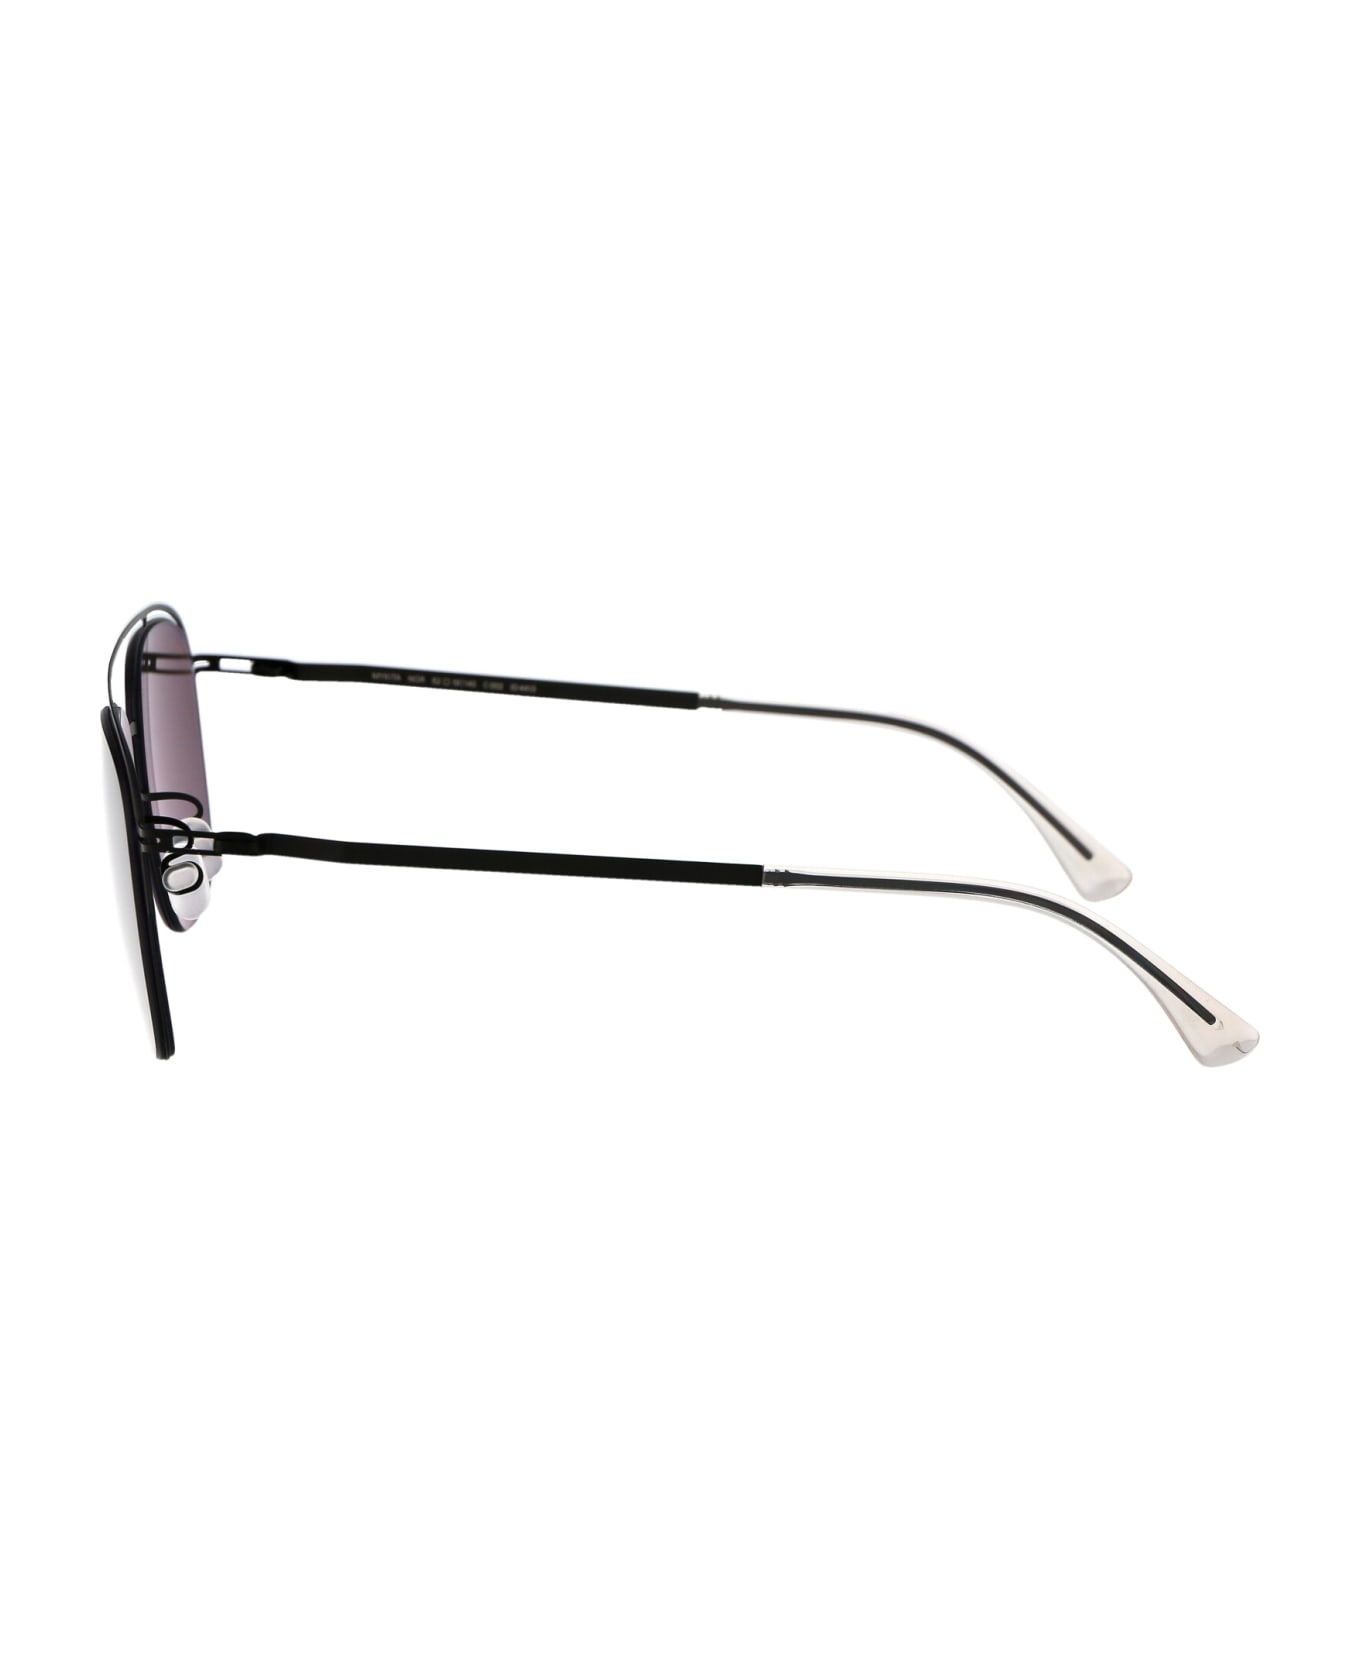 Mykita Nor Sunglasses - 002 Black Polarized Pro Hi-Con